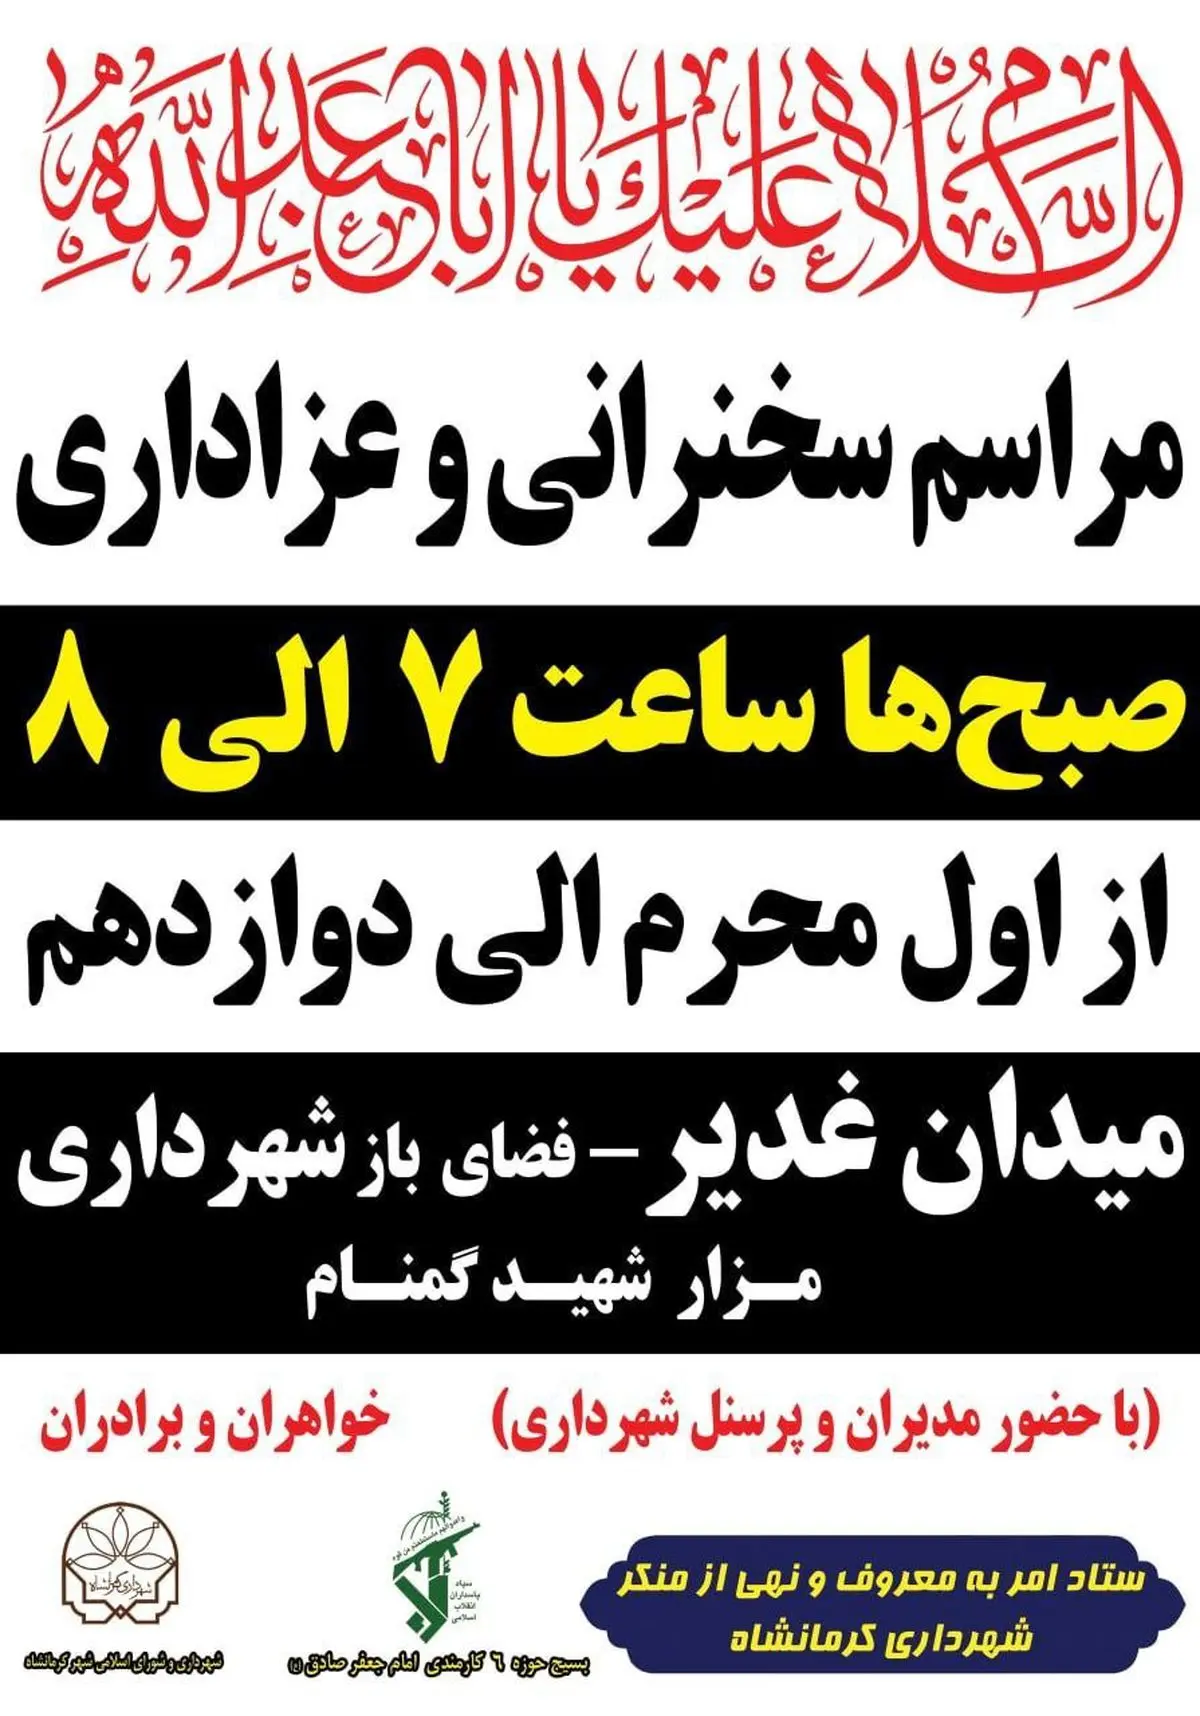 

مراسم زیارت عاشورا و عزاداری در شهرداری کرمانشاه برگزار می شود



 